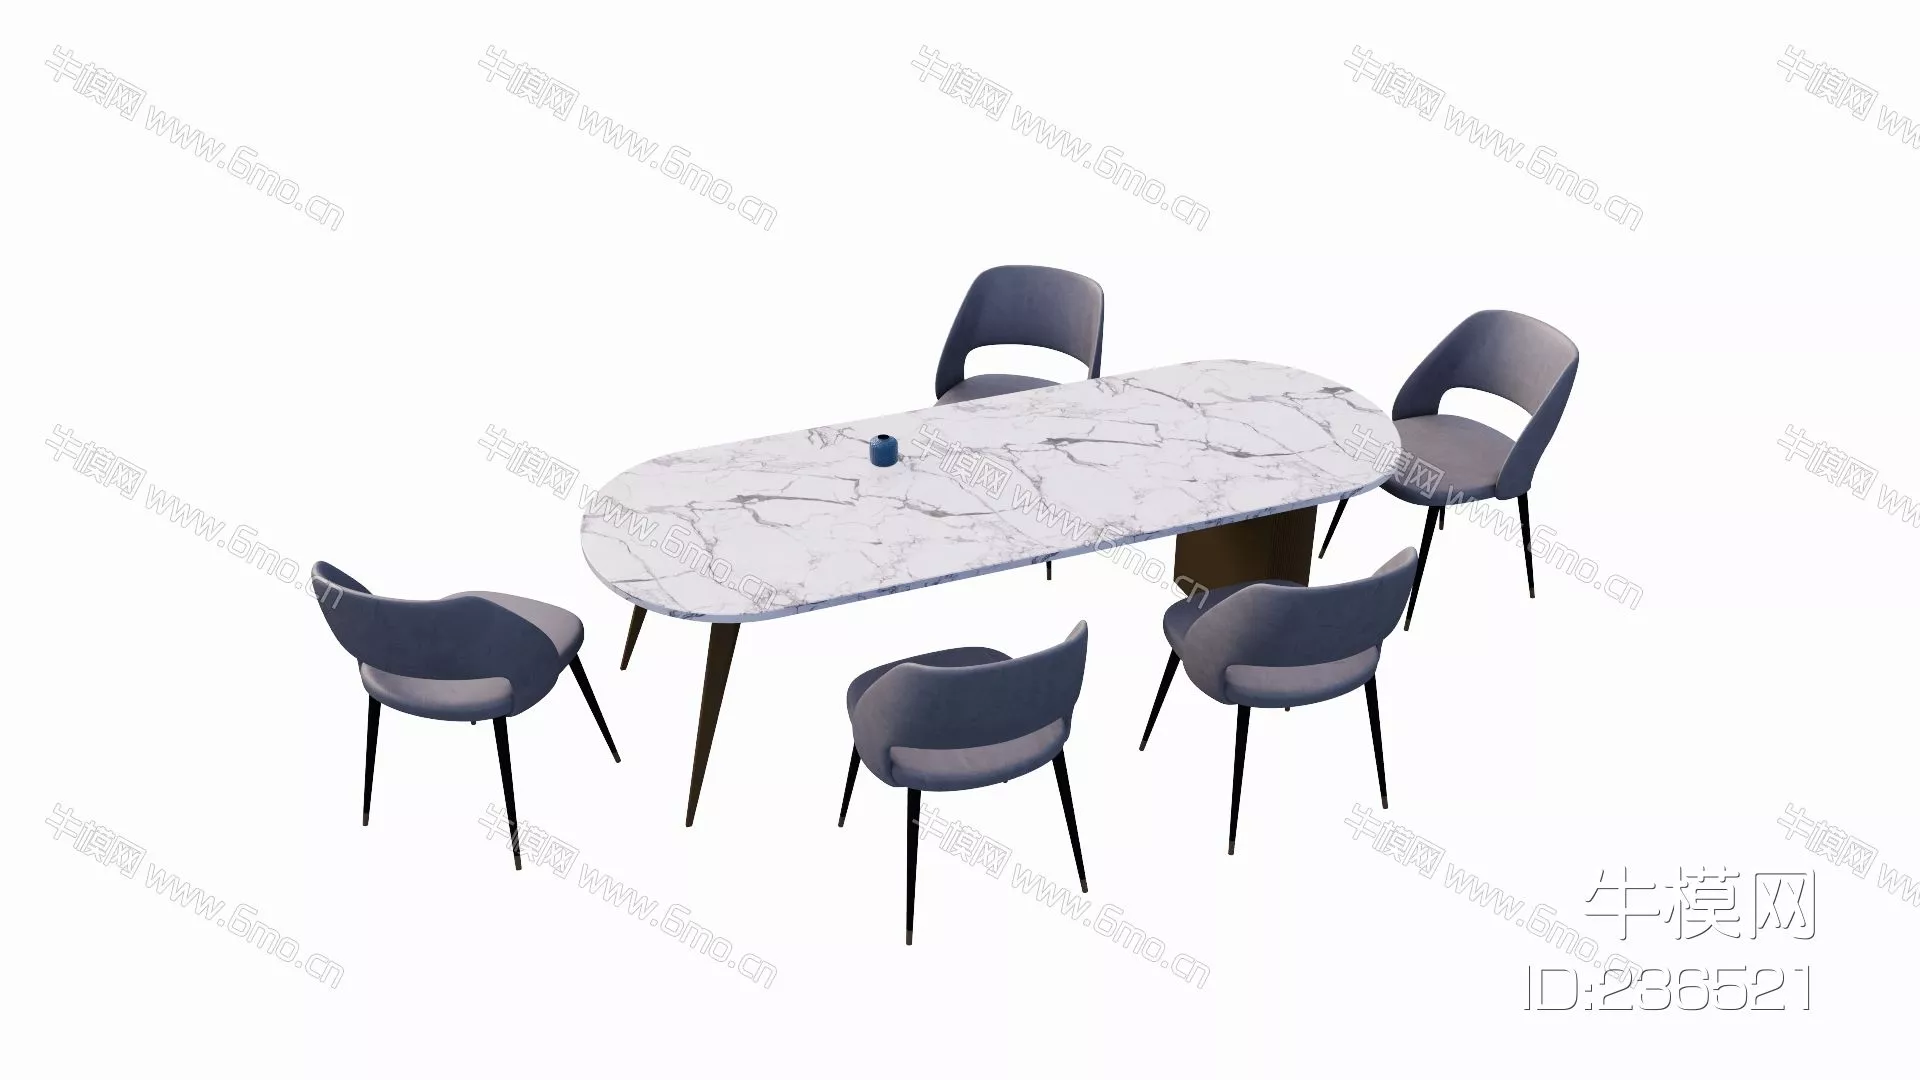 MODERN DINING TABLE SET - SKETCHUP 3D MODEL - ENSCAPE - 236521